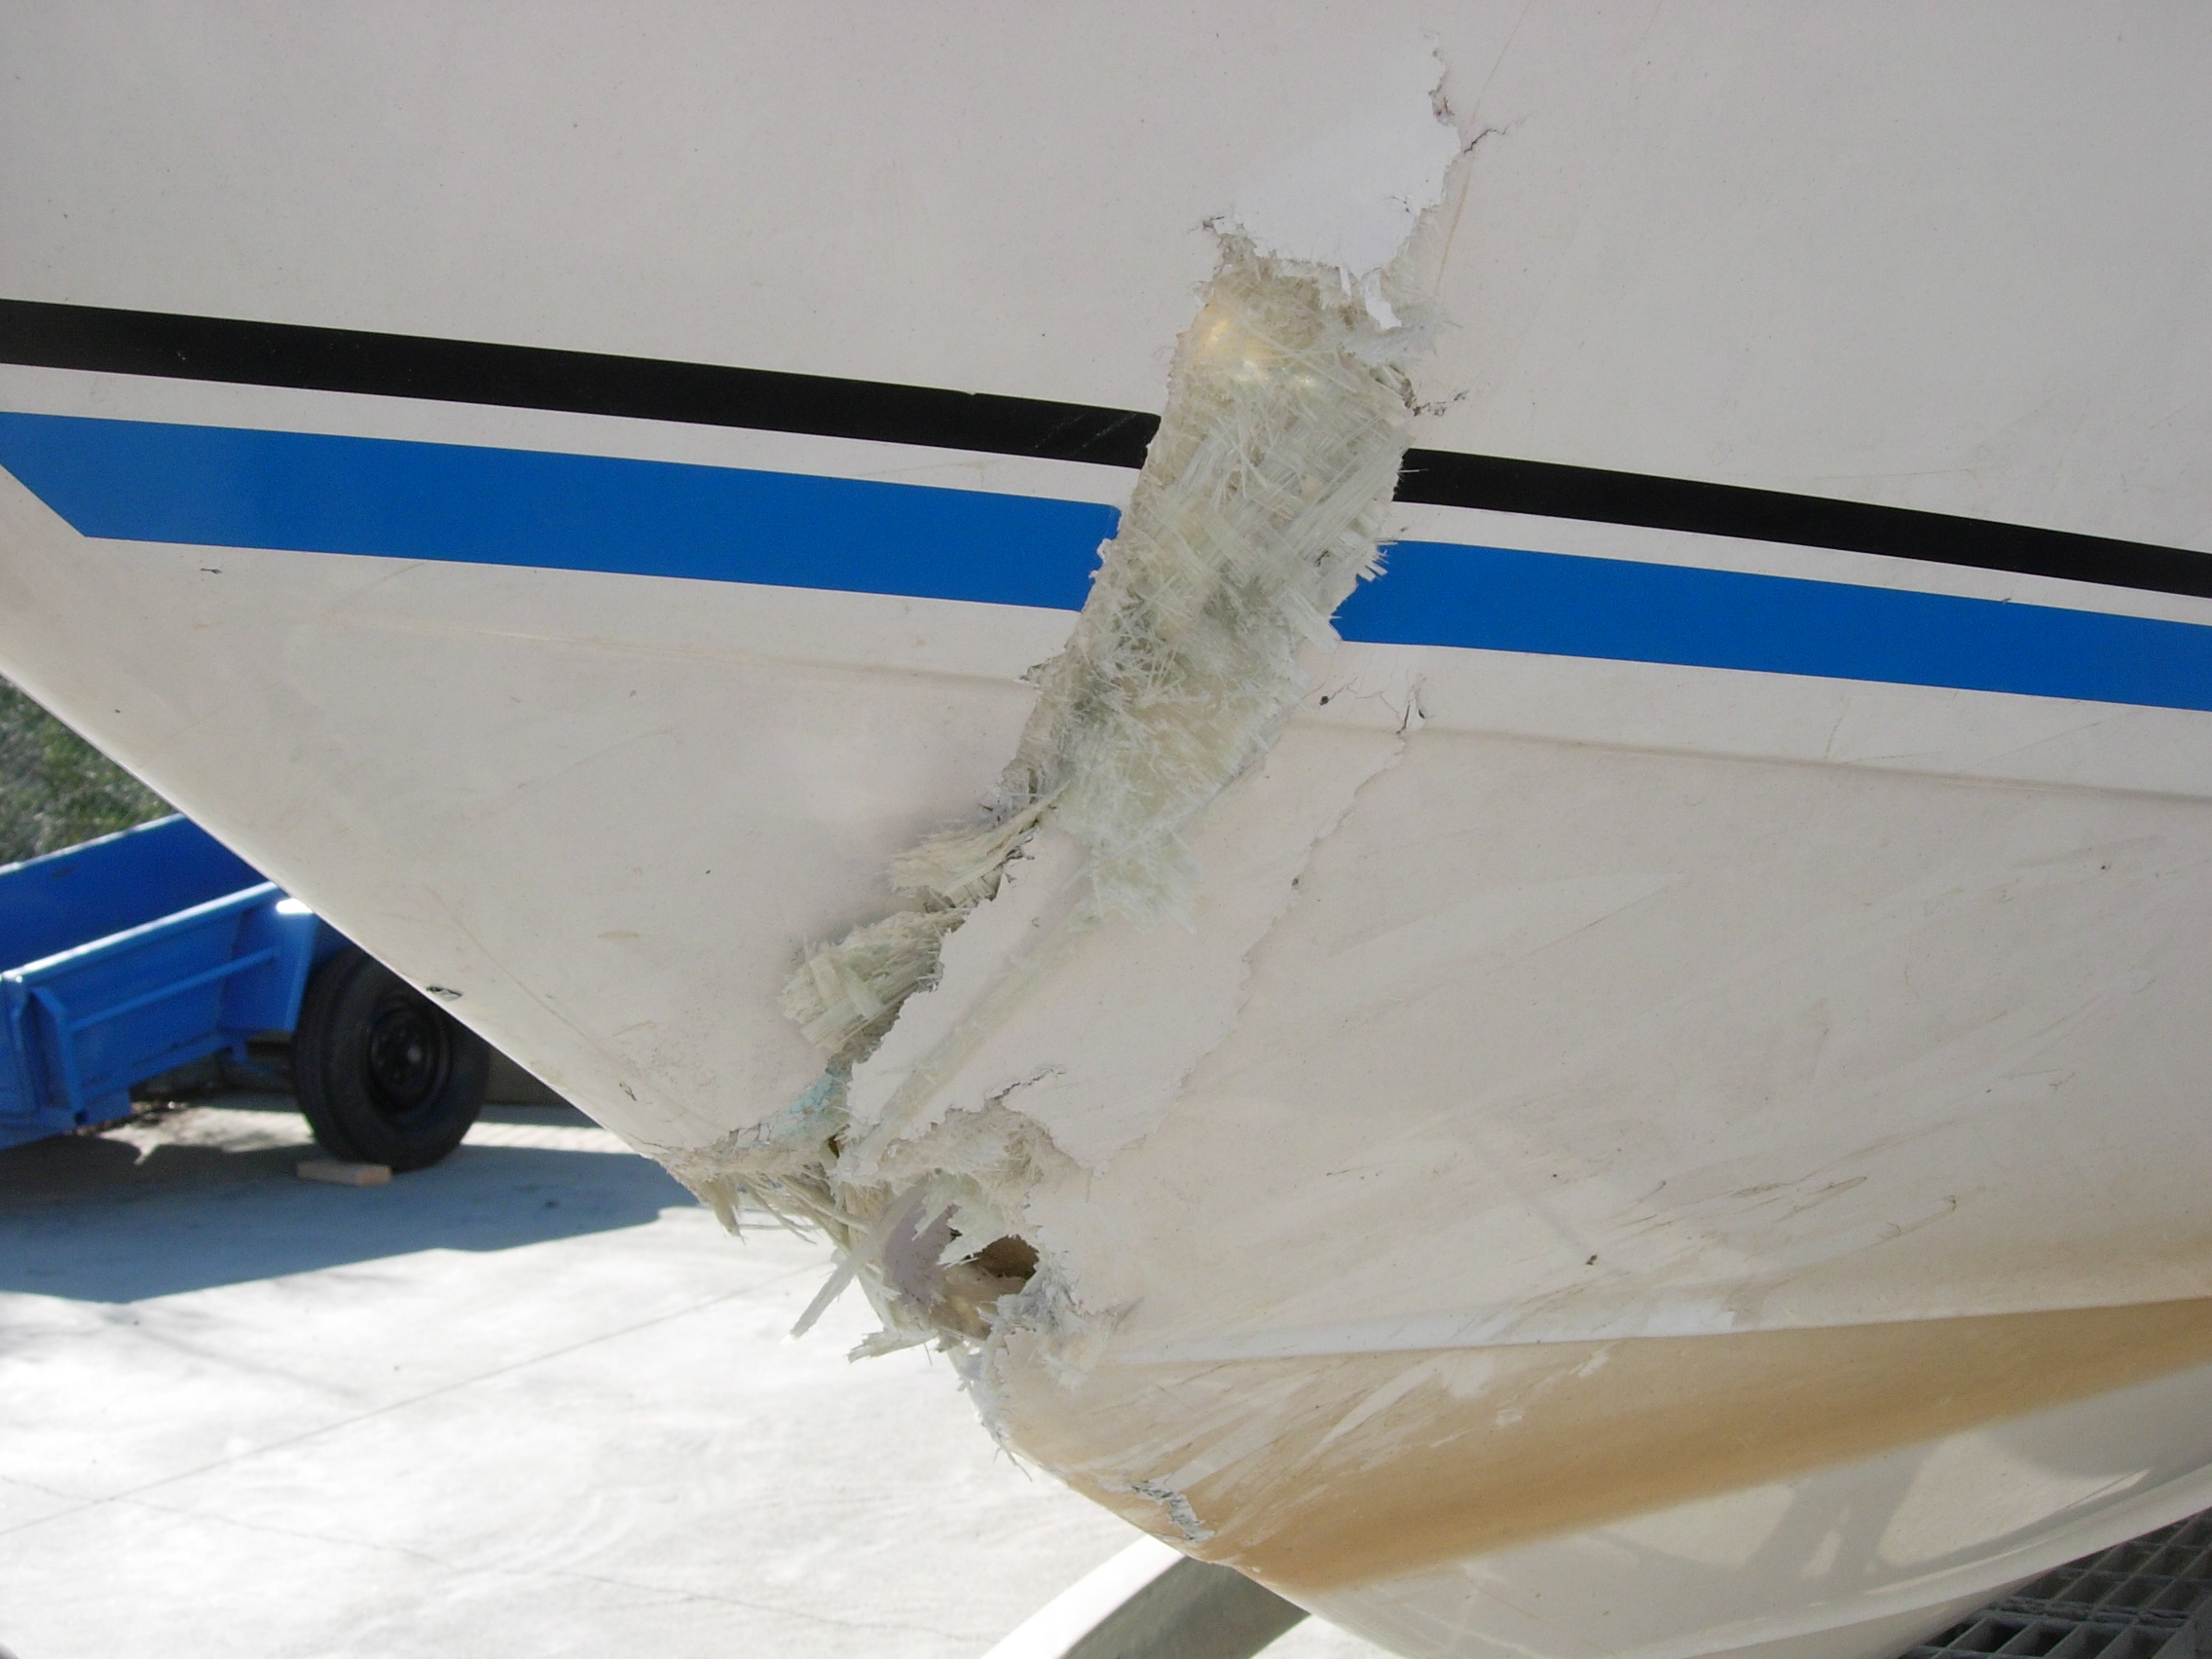 Structural boat damage repair